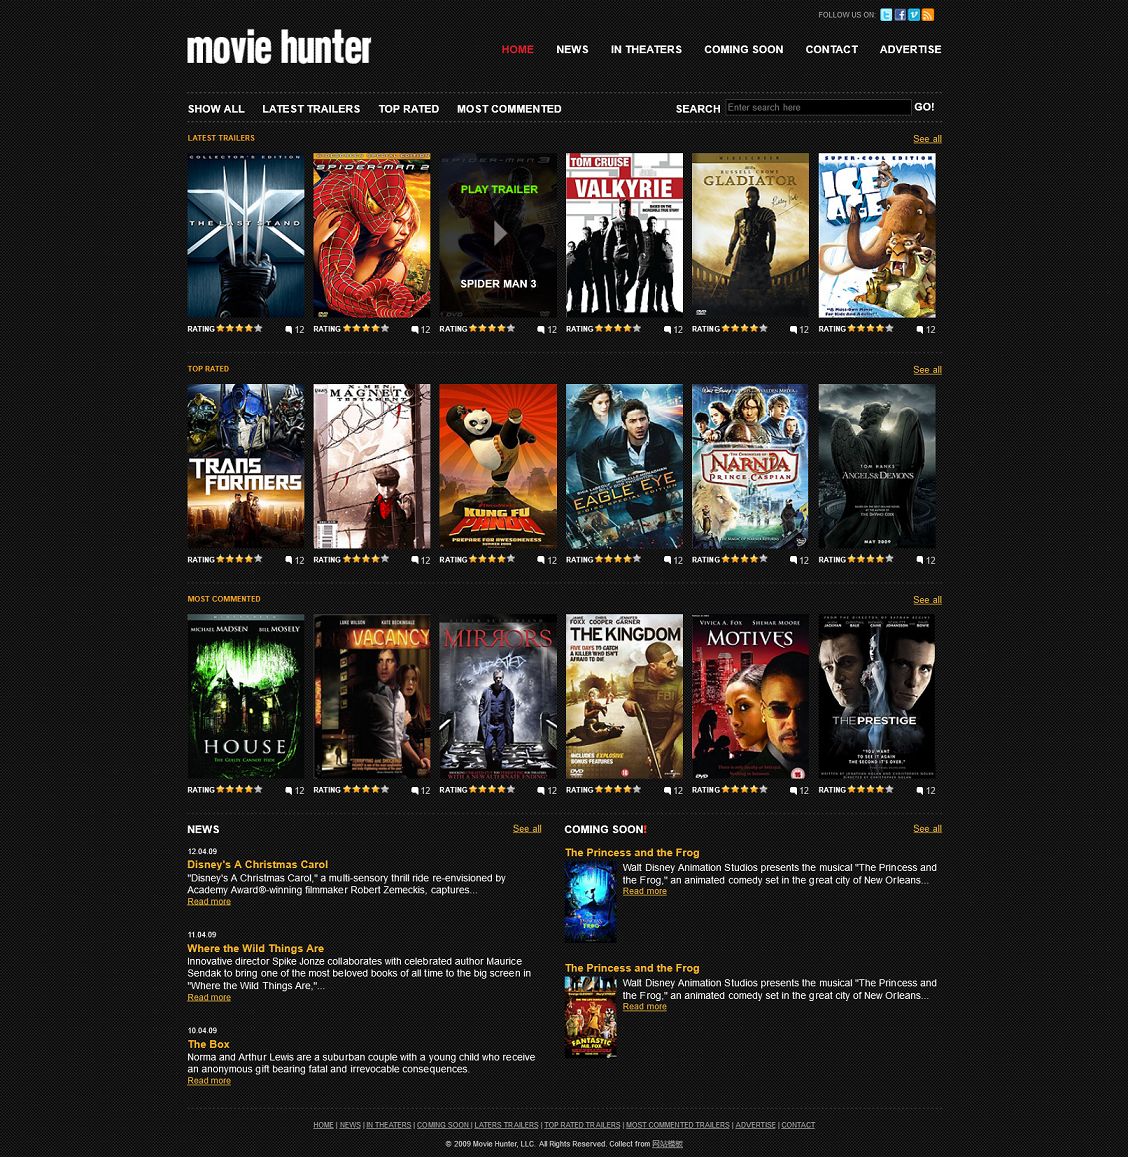 黑色纹理电影视频类html网站模板